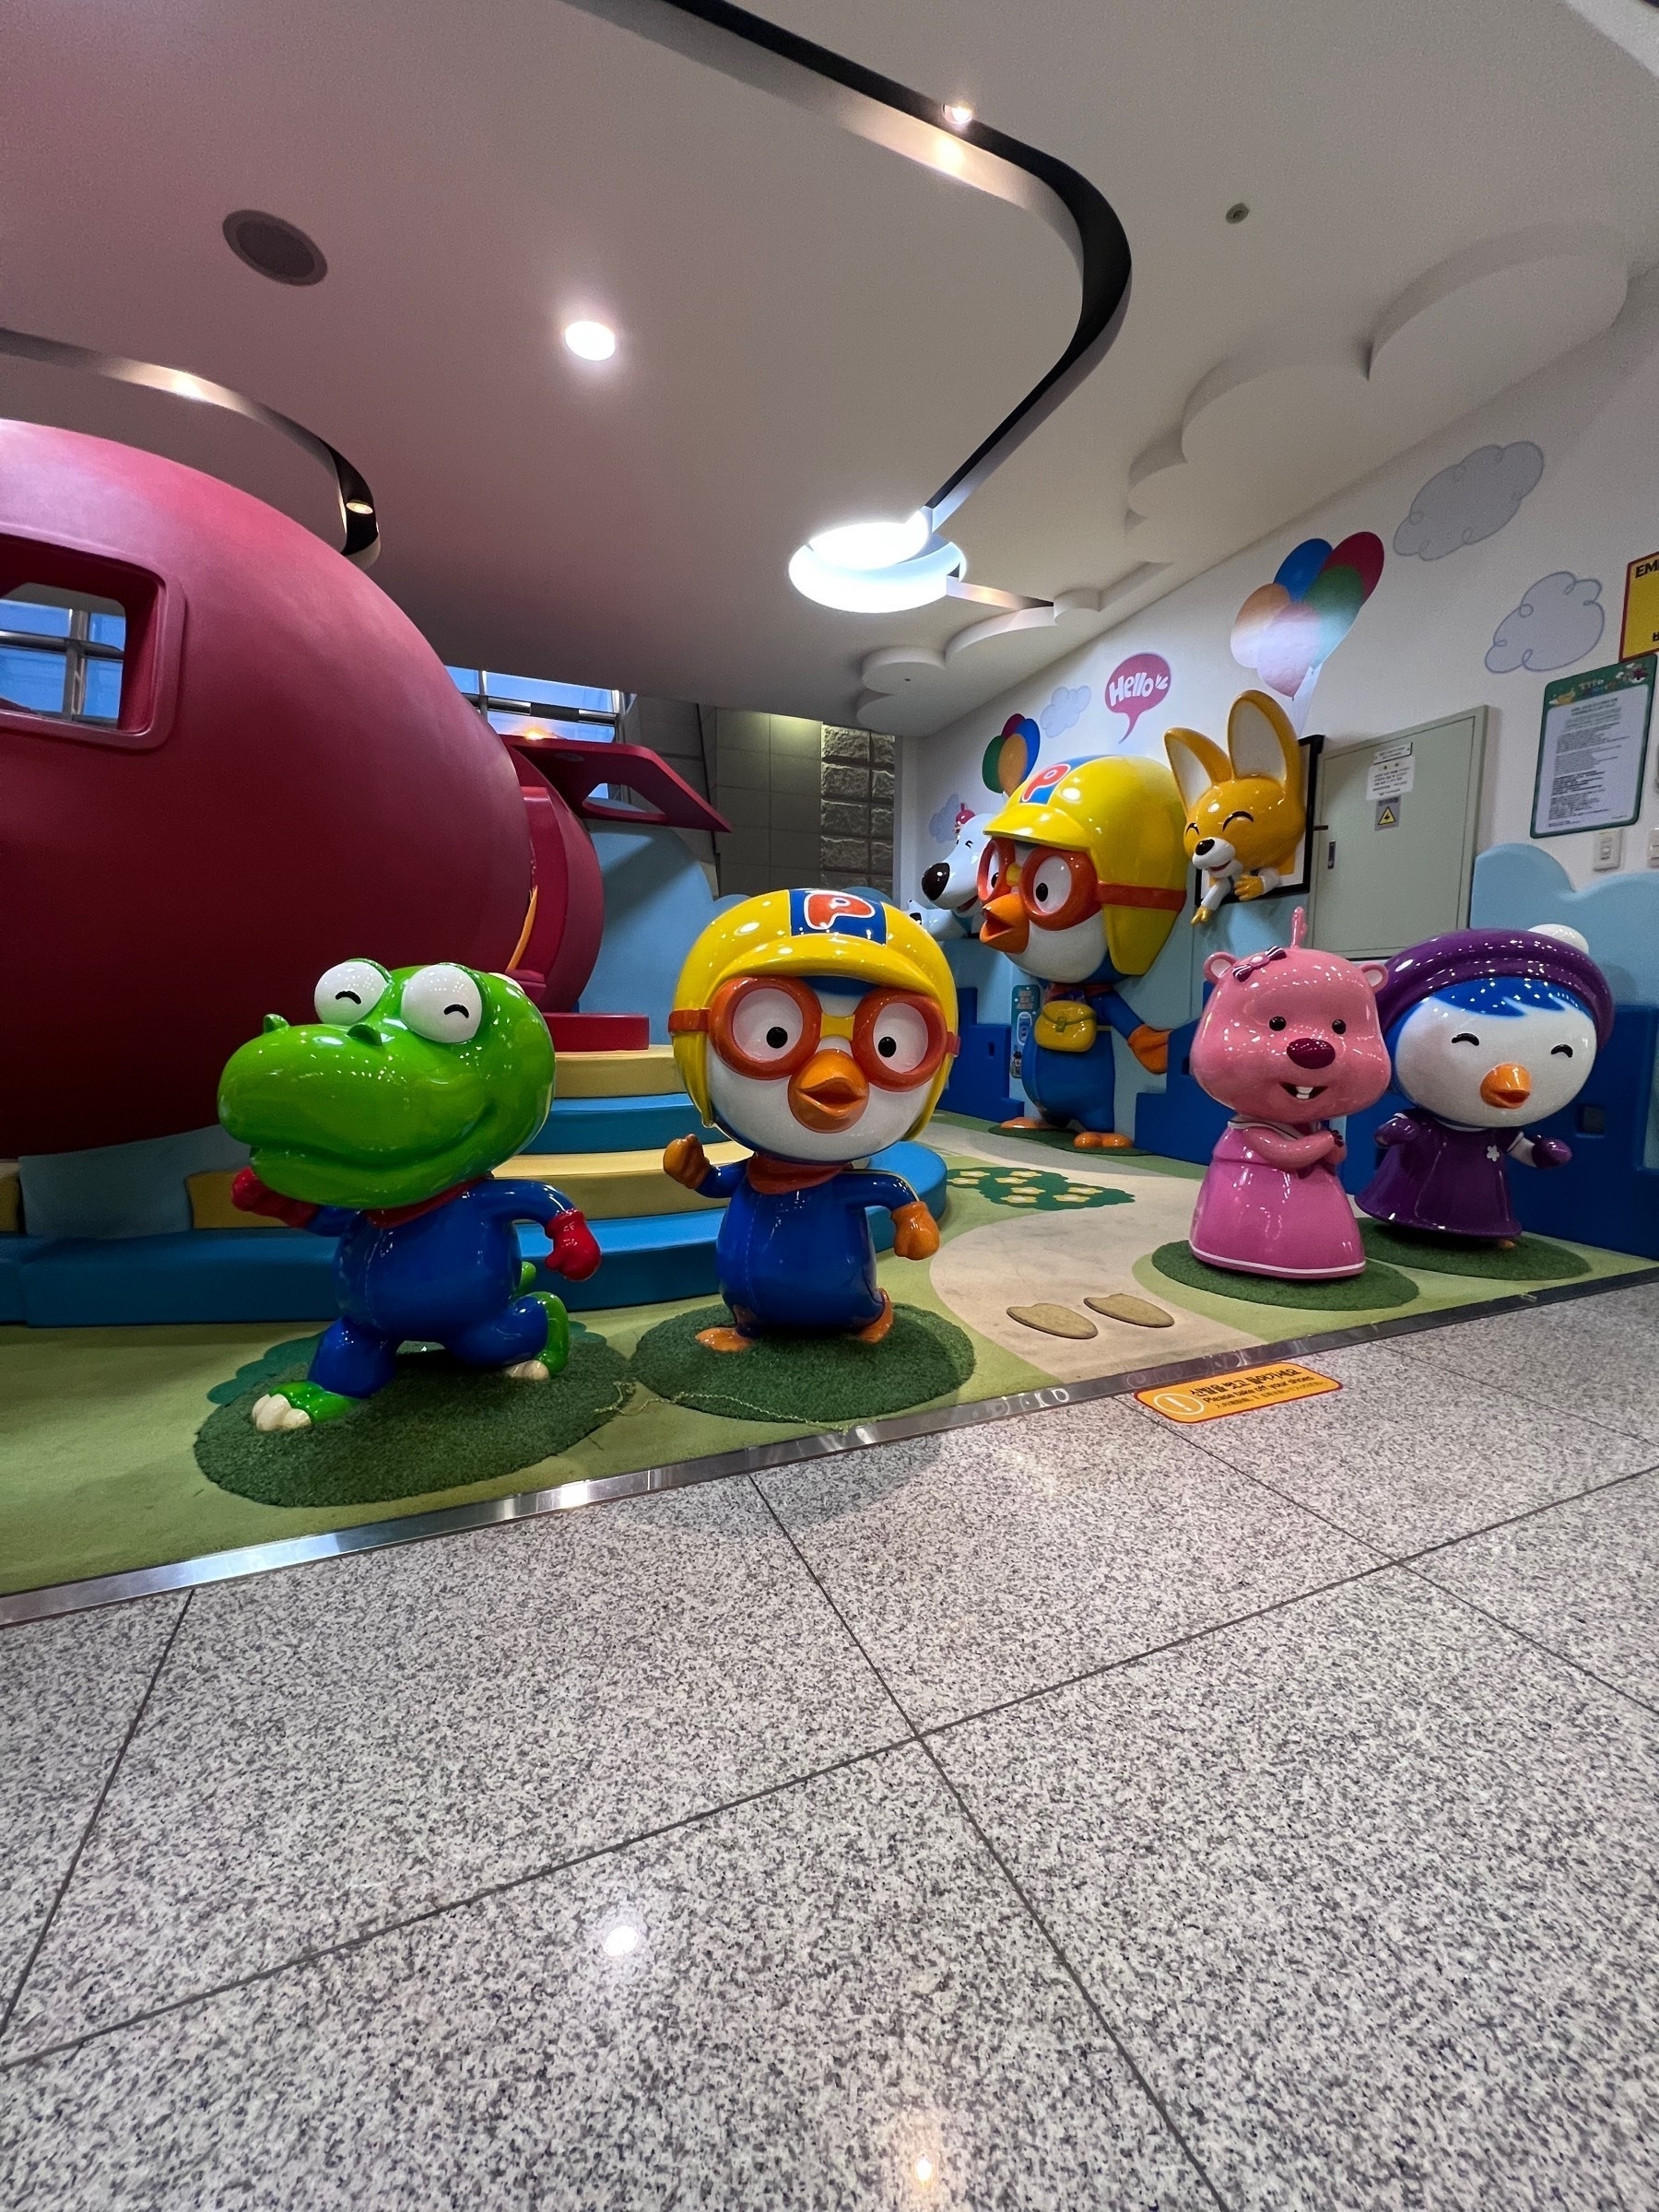 Cartoon figures in Incheon airport play area. 